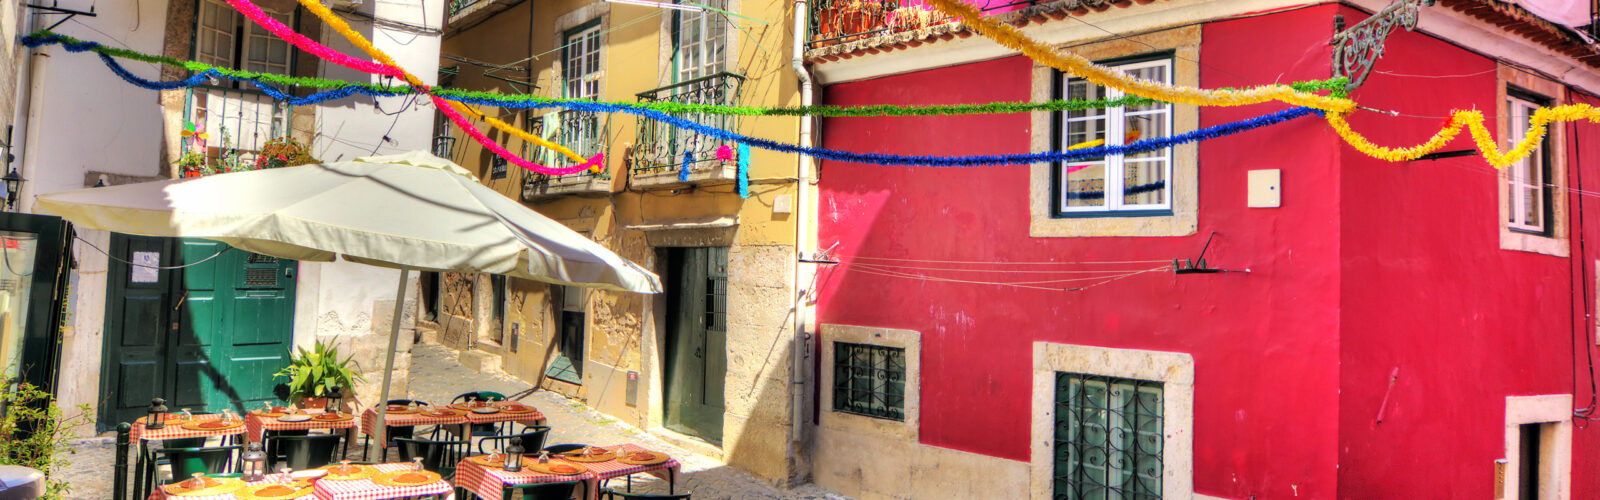 Lisbon-cafe-colours